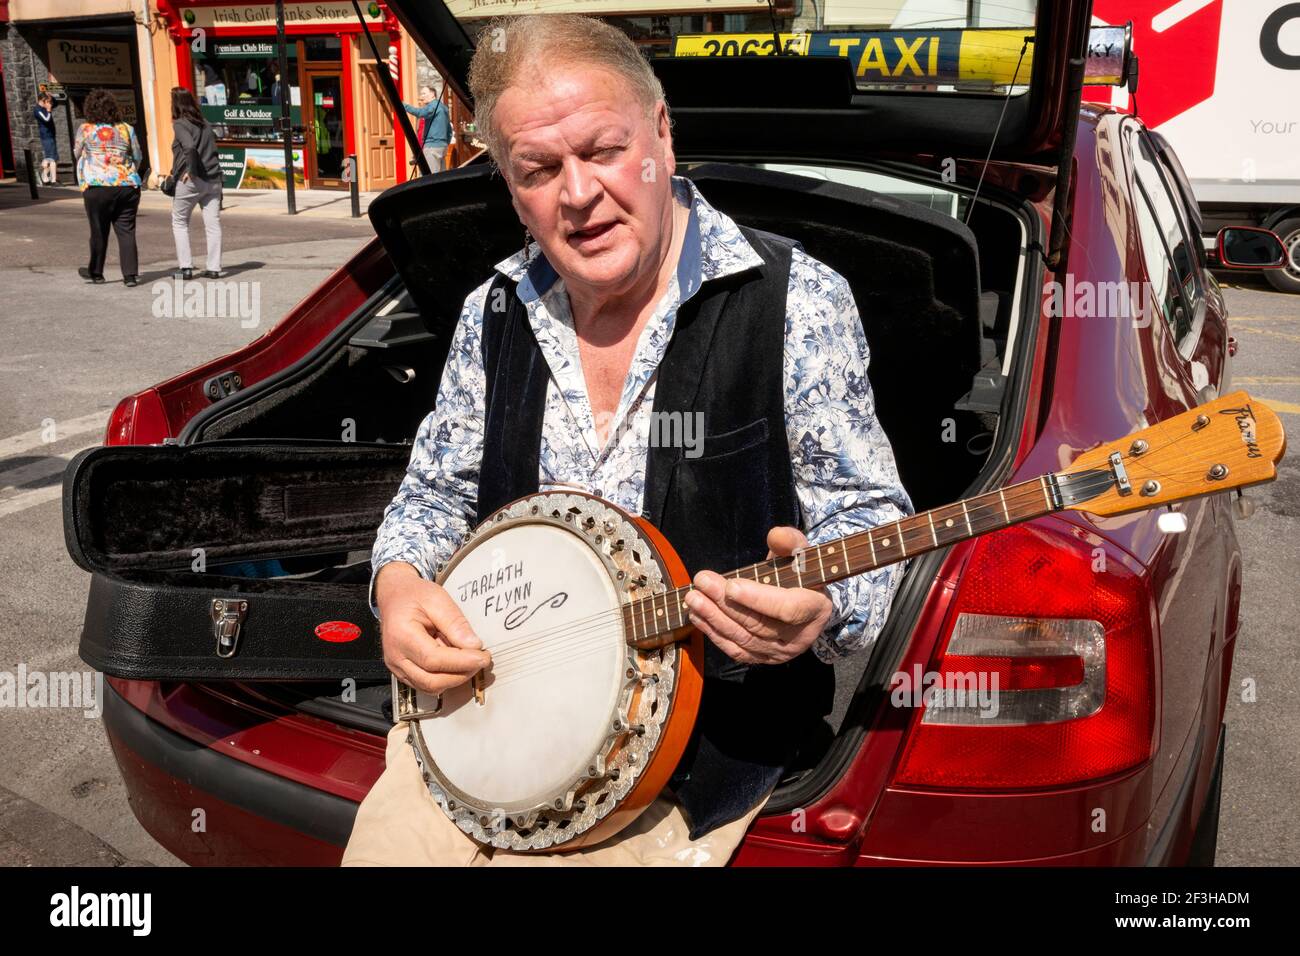 Der irische Taxifahrer sitzt im Kofferraum seines Autos und spielt ein Banjo, das am College Street Taxistand in Killarney, County Kerry, Irland, auf Fahrpreise wartet Stockfoto